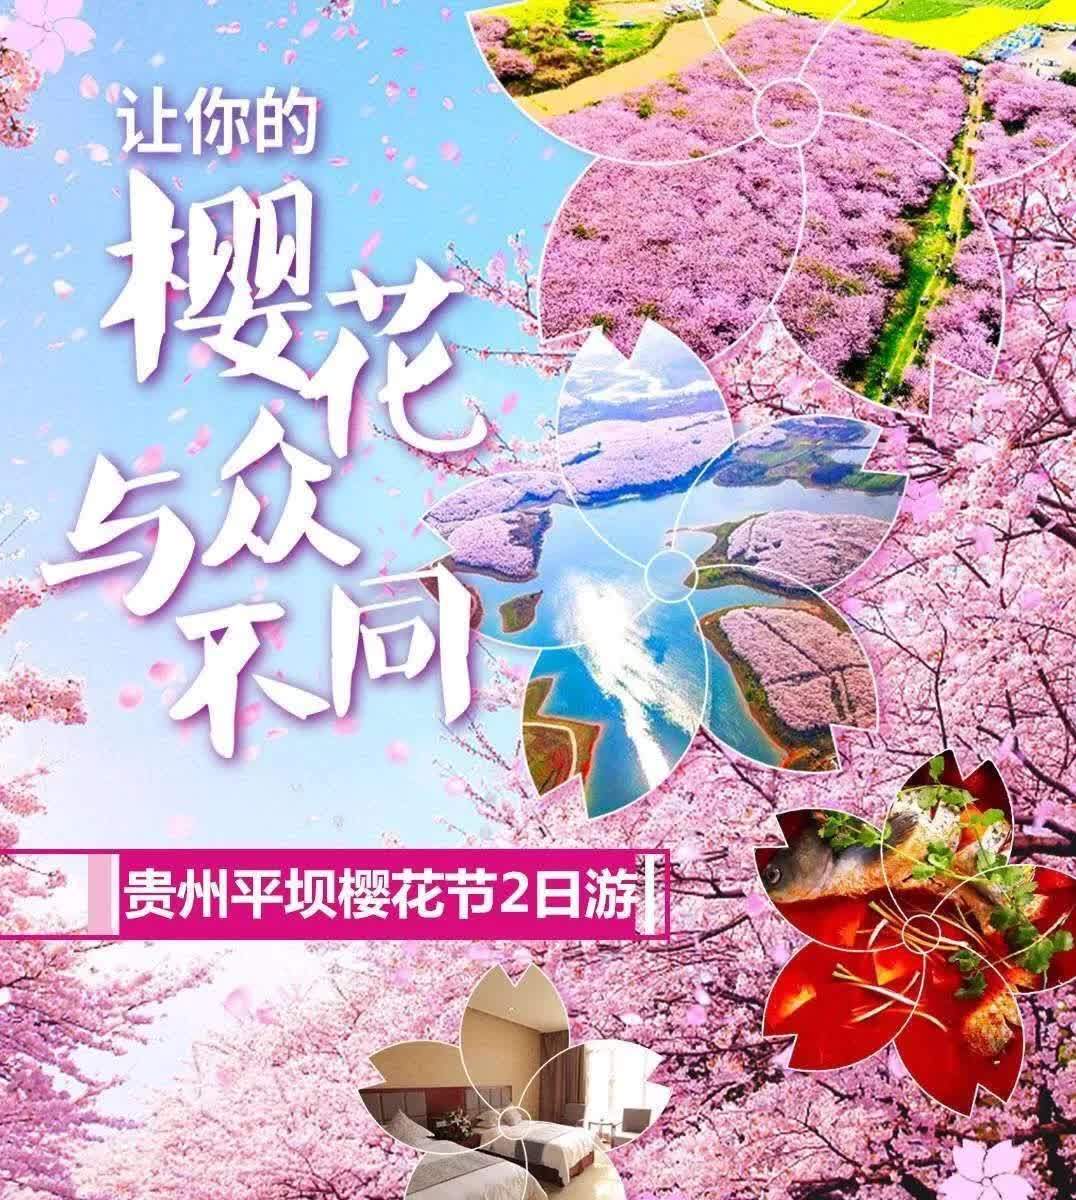 贵州平坝樱花节邀您赏花